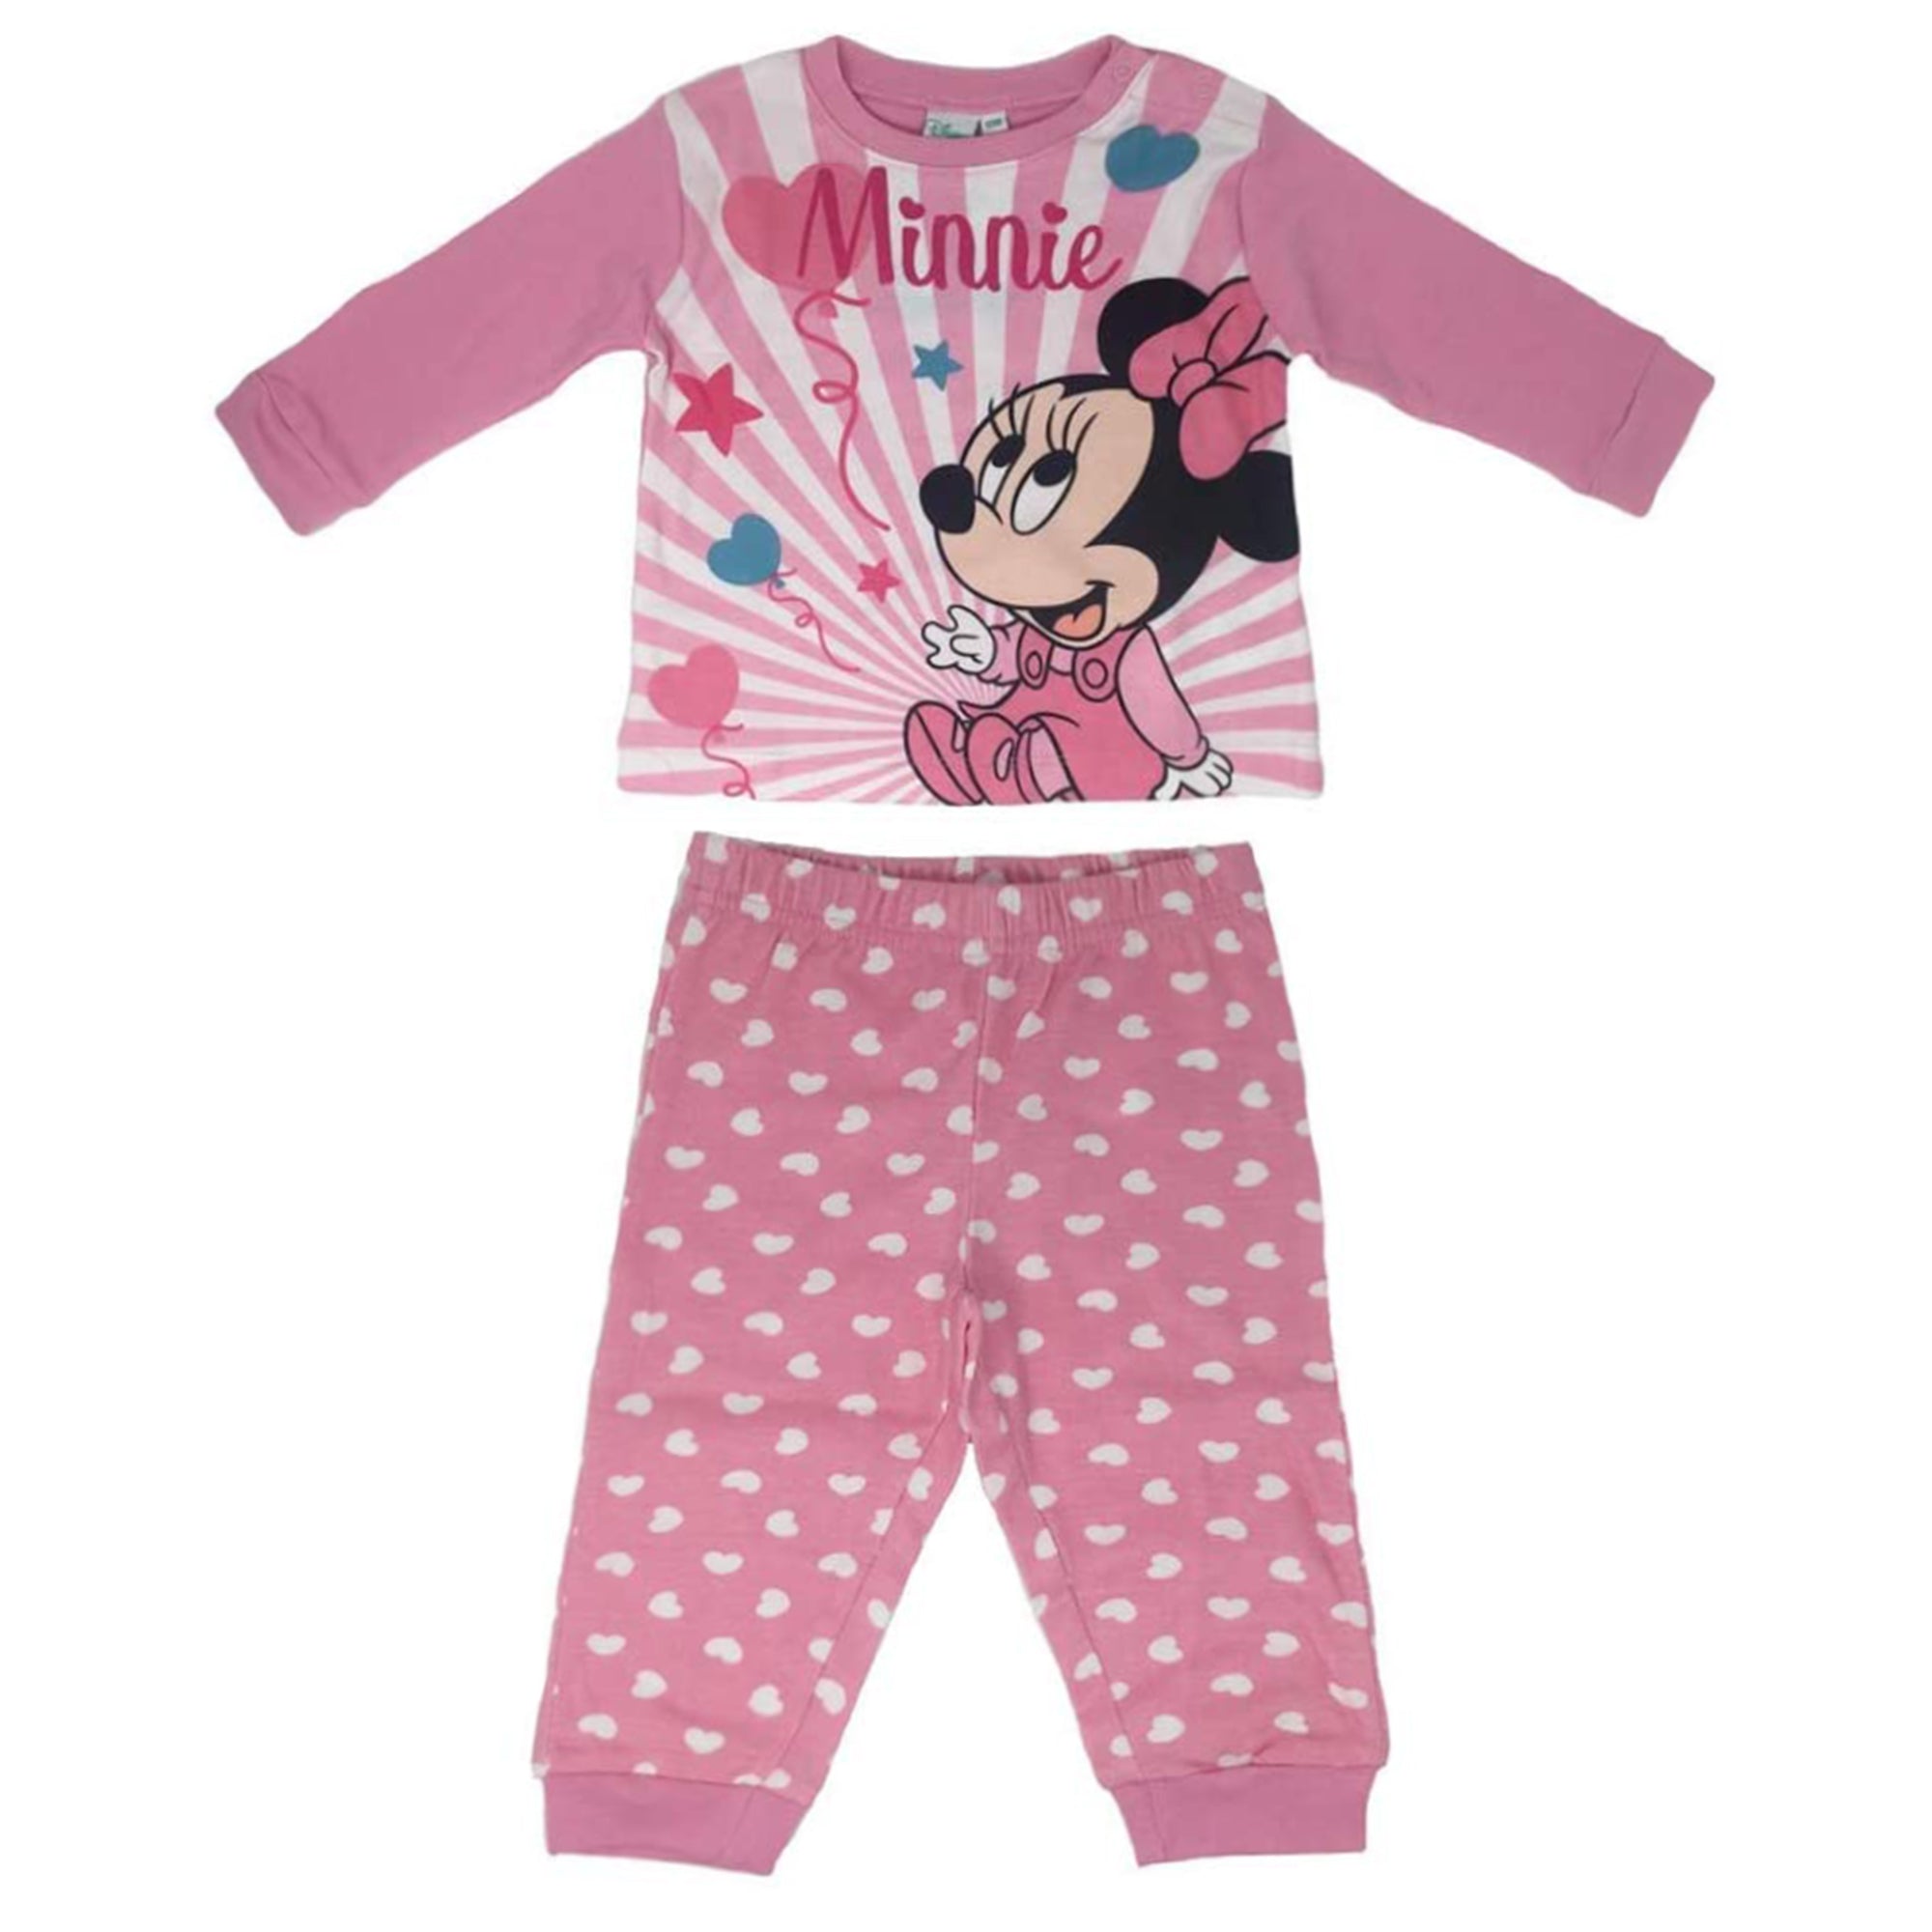 Pigiama neonato Disney Minnie Baby maniche lunghe in caldo cotone bambina 3440